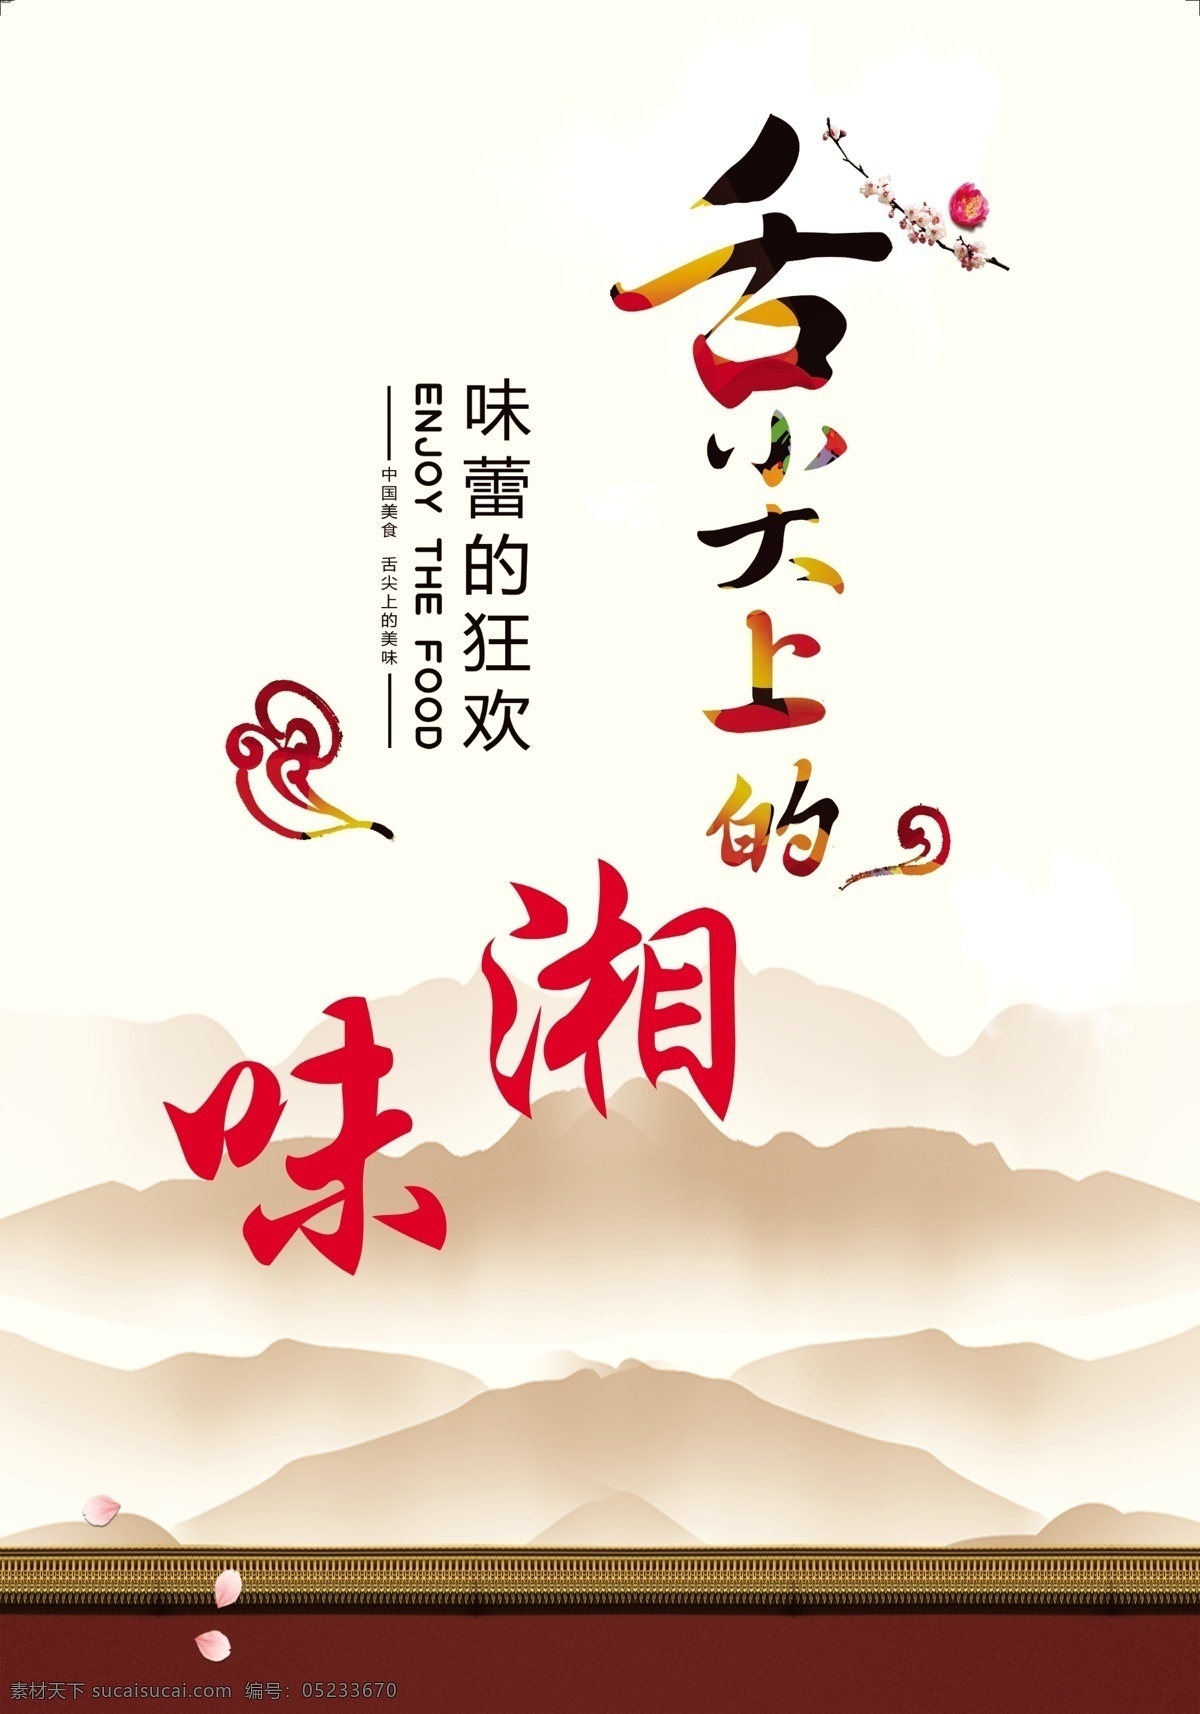 舌尖上的美食 美食 舌尖上 中国 美味 吃 热干面 背景 banner 展板 展架 风格 创意设计 淘宝 主图 海报 文化 标签 图标